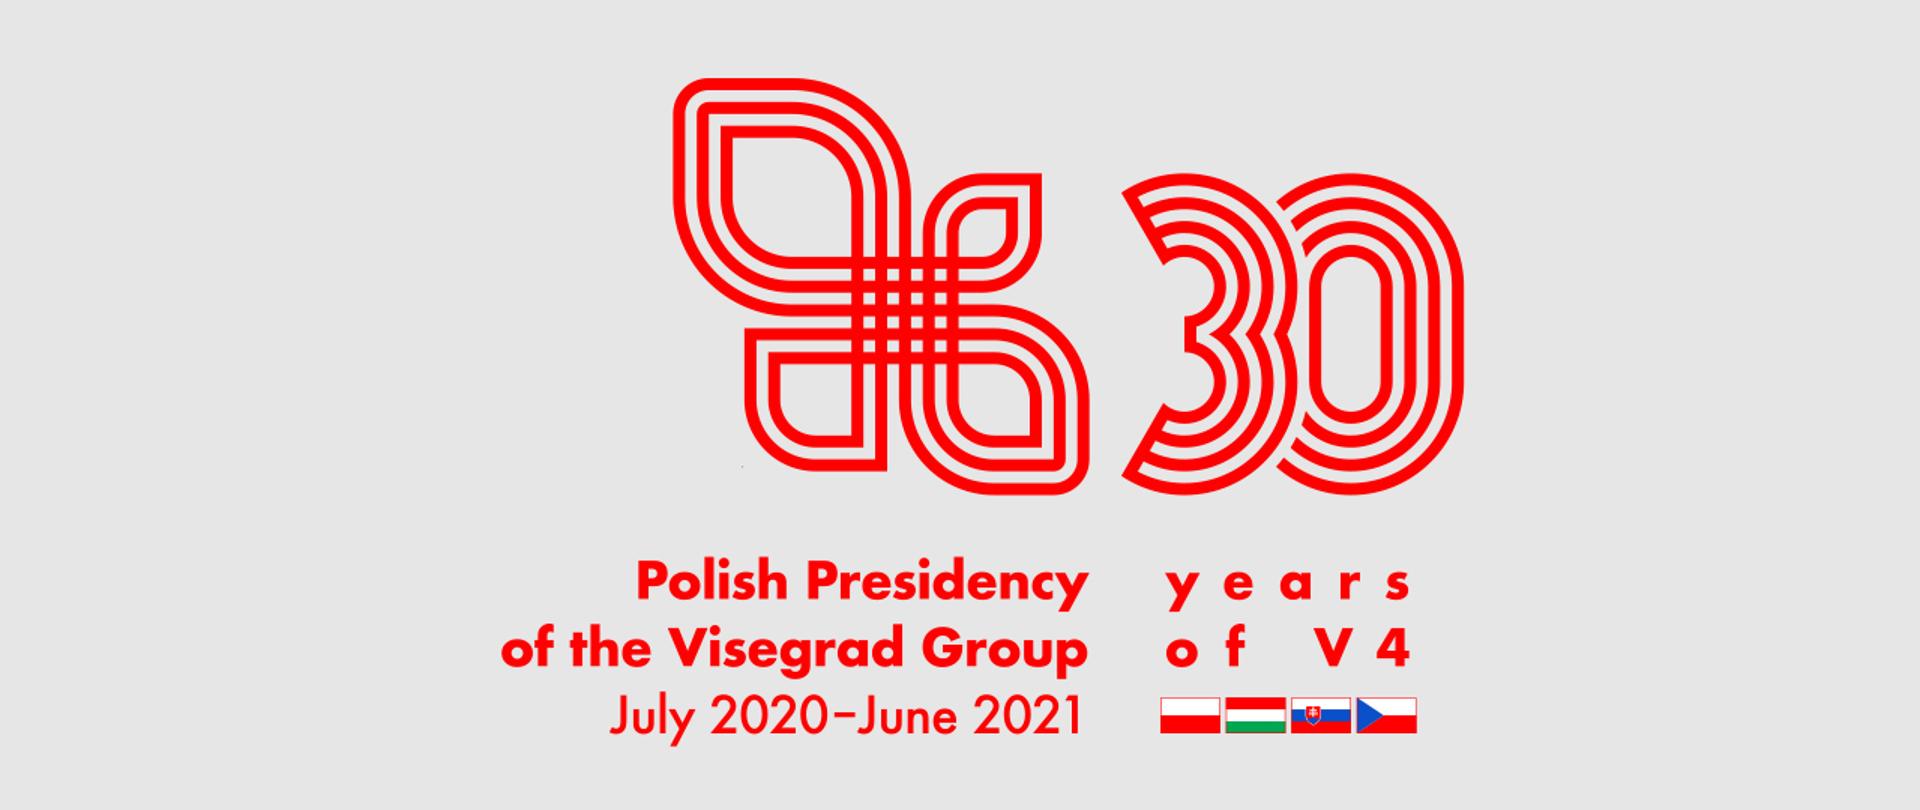 Polska prezydencja w V4 ; 30-lecie V4 - Logo 